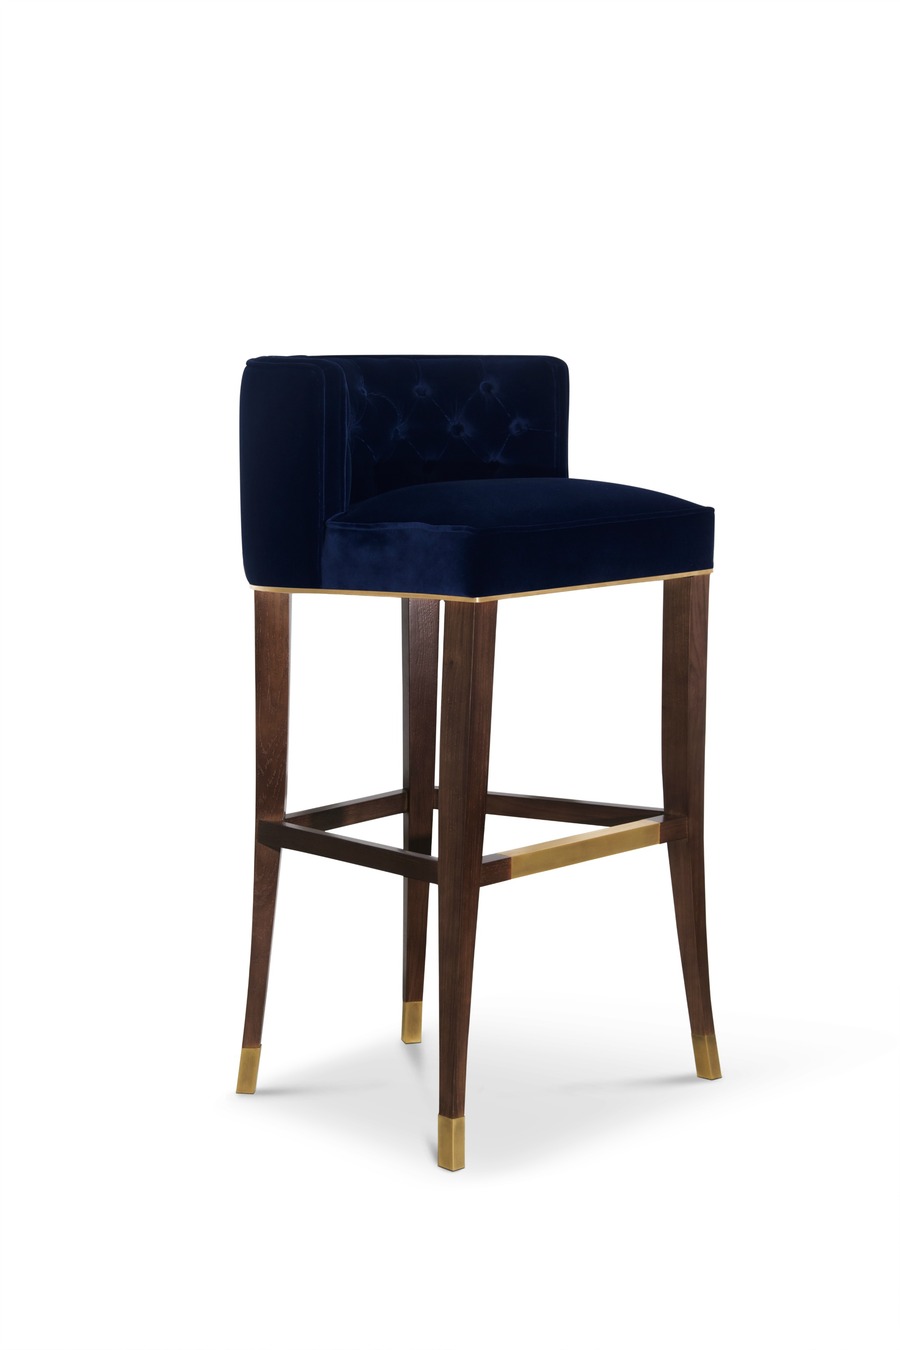 modern bar chair